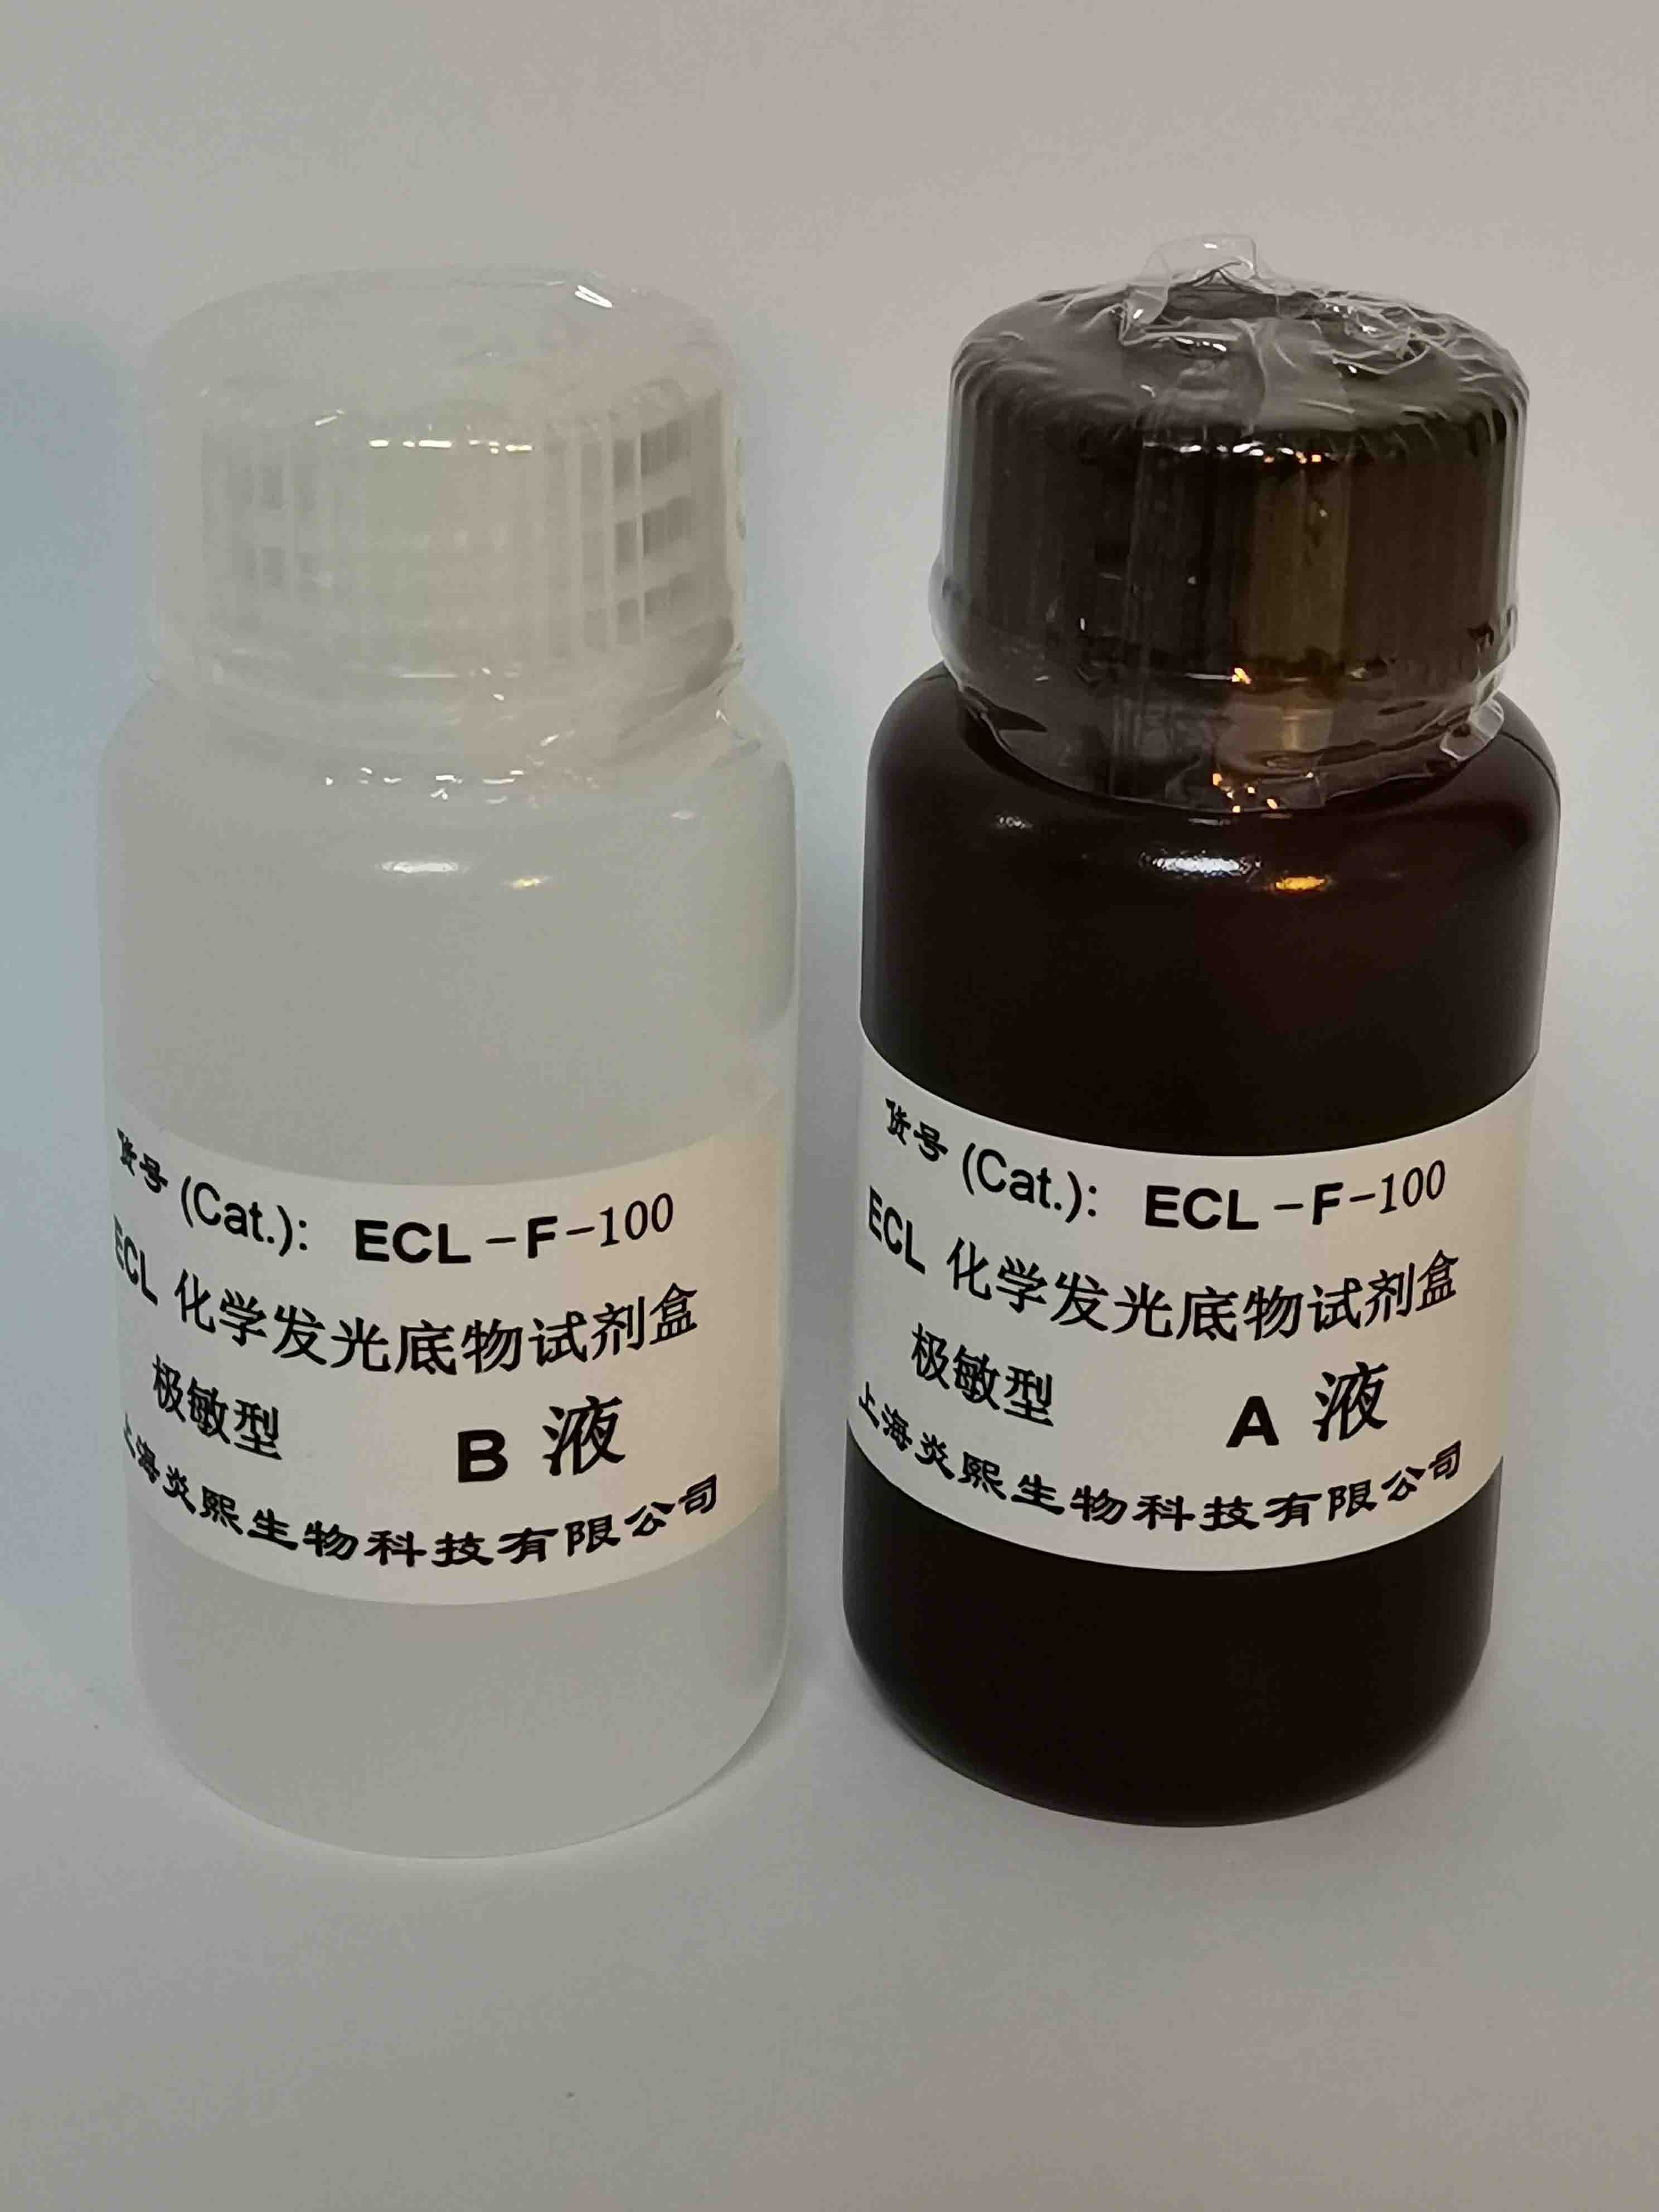 上海市极敏型 ECL化学发光底物试剂盒厂家极敏型 ECL化学发光底物试剂盒